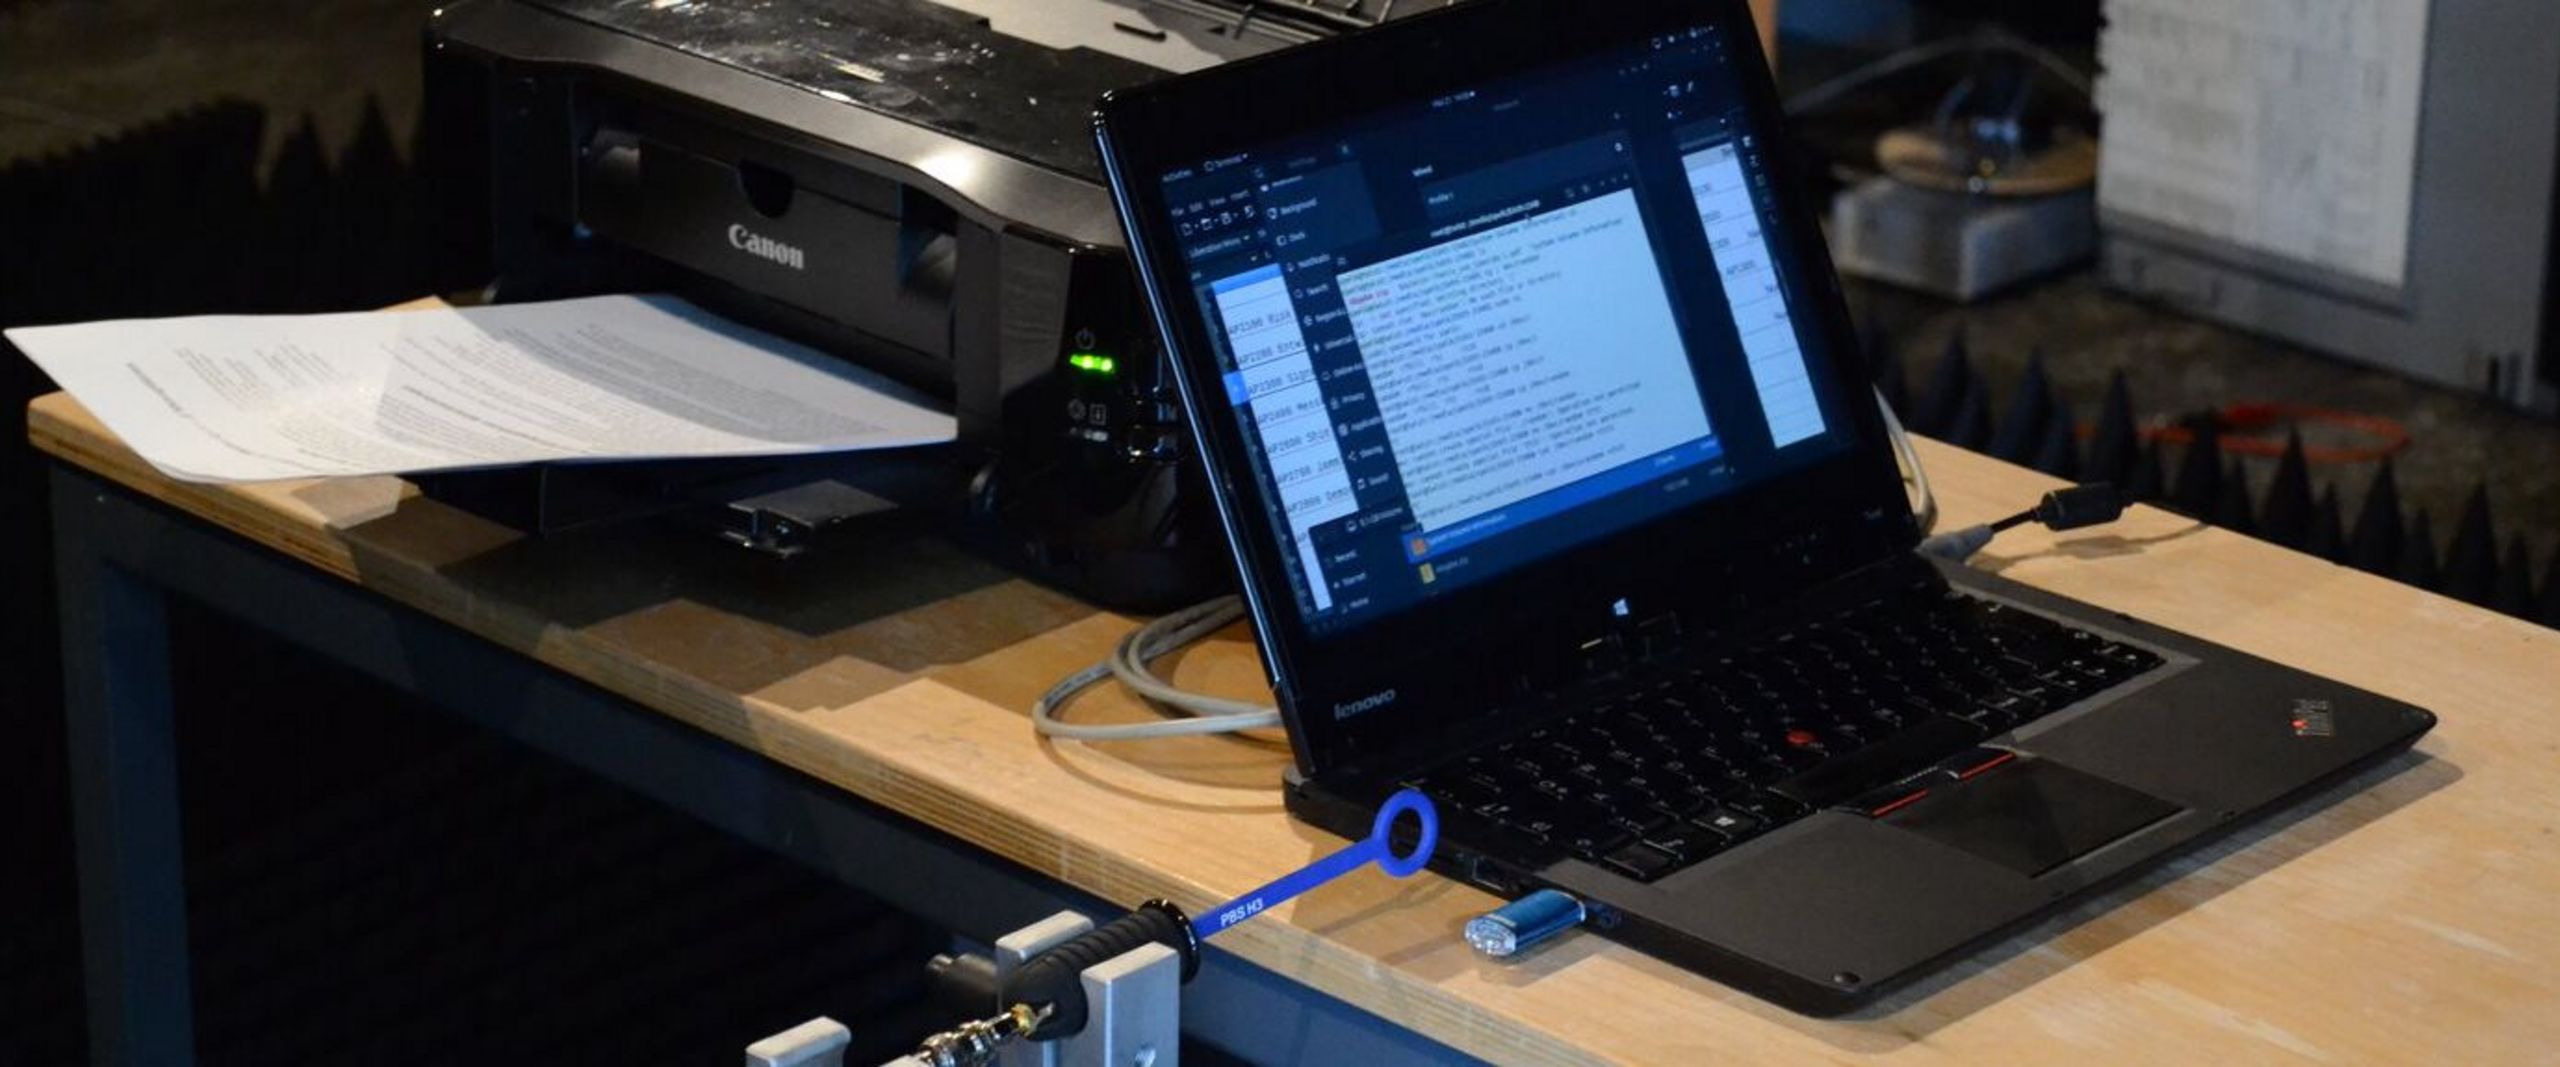 Laptop mit magntischer Feldmesssonde welche an einem Roboterarm befestigt ist